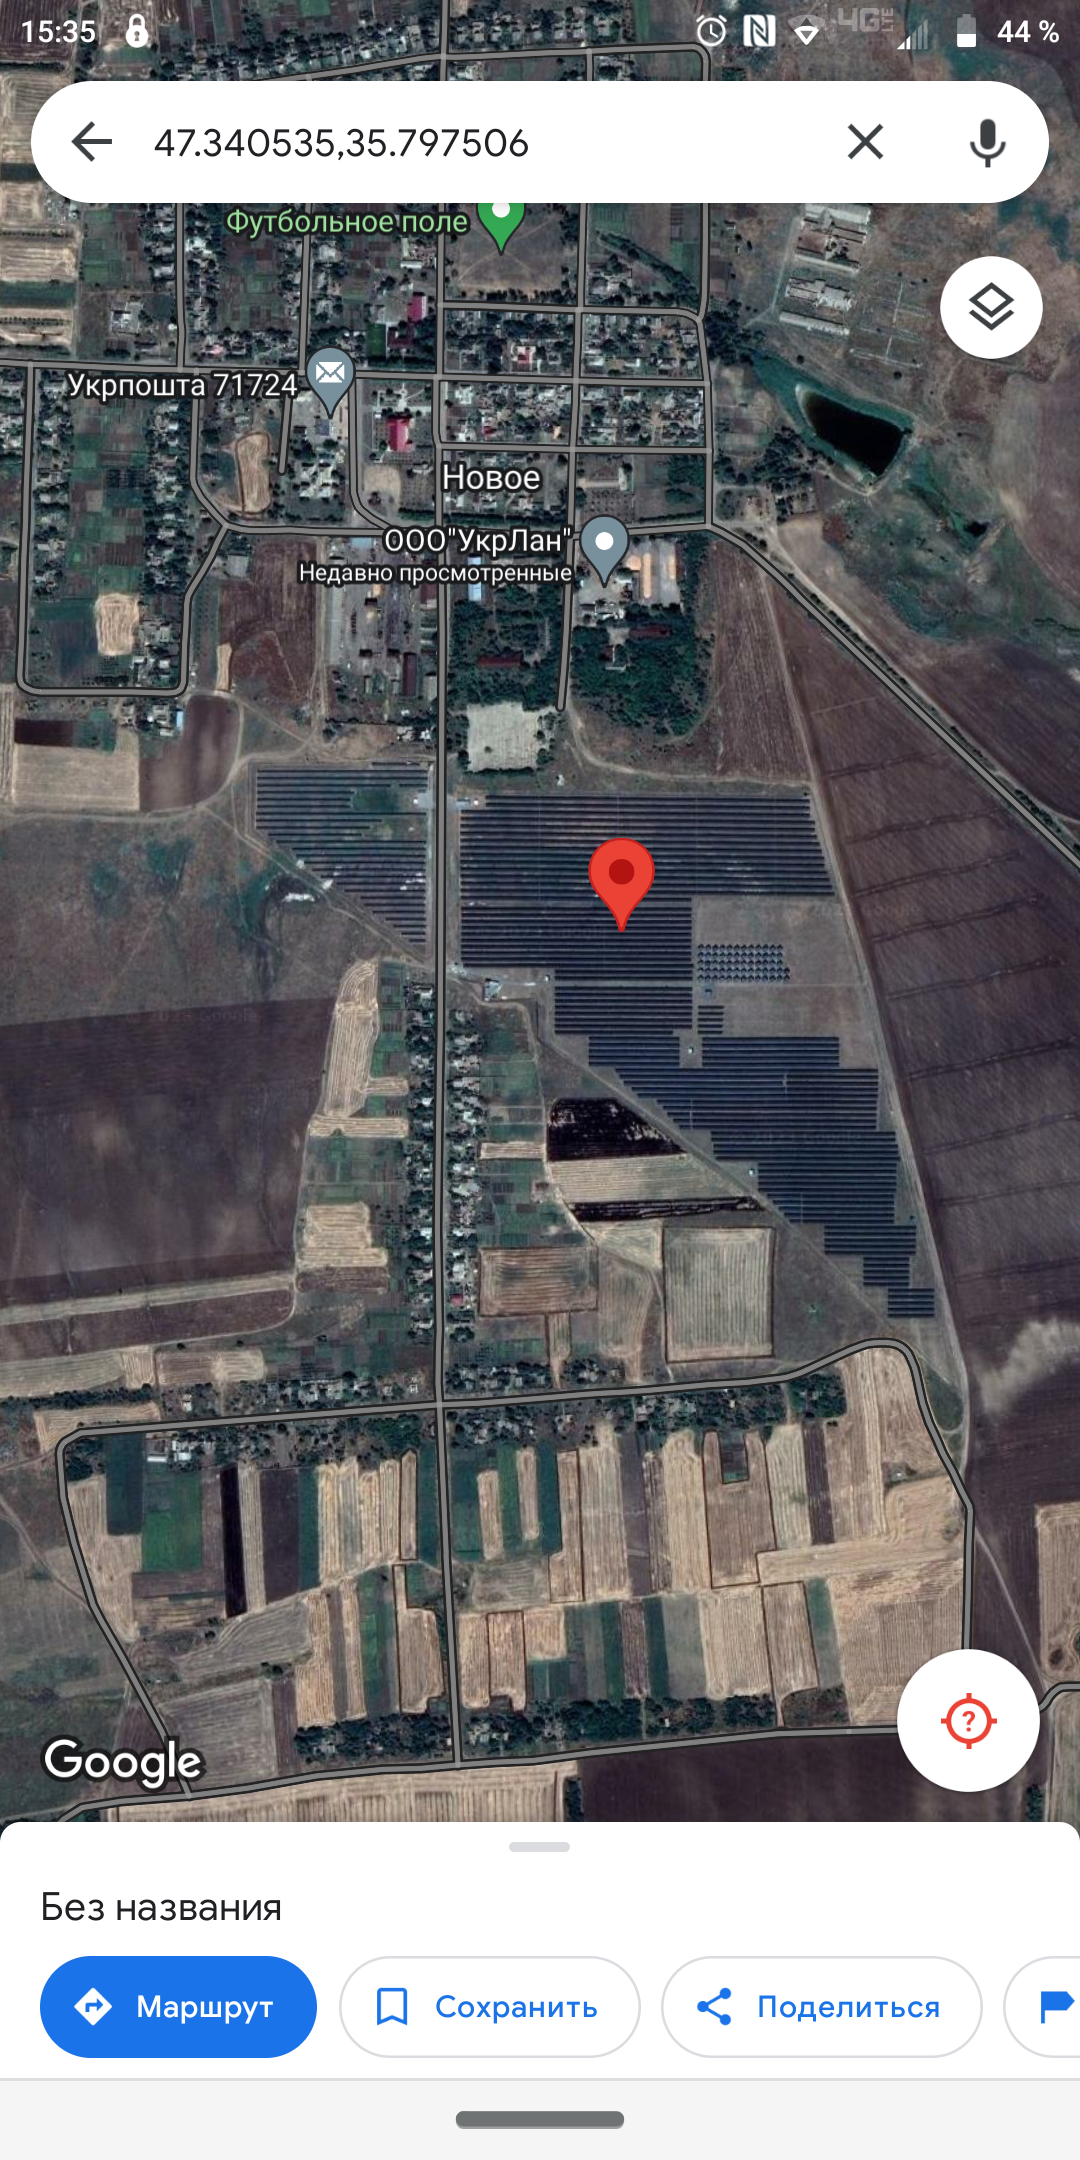 Просто спутниковые снимки самой большой солнечной электростанции вЗапорожской области